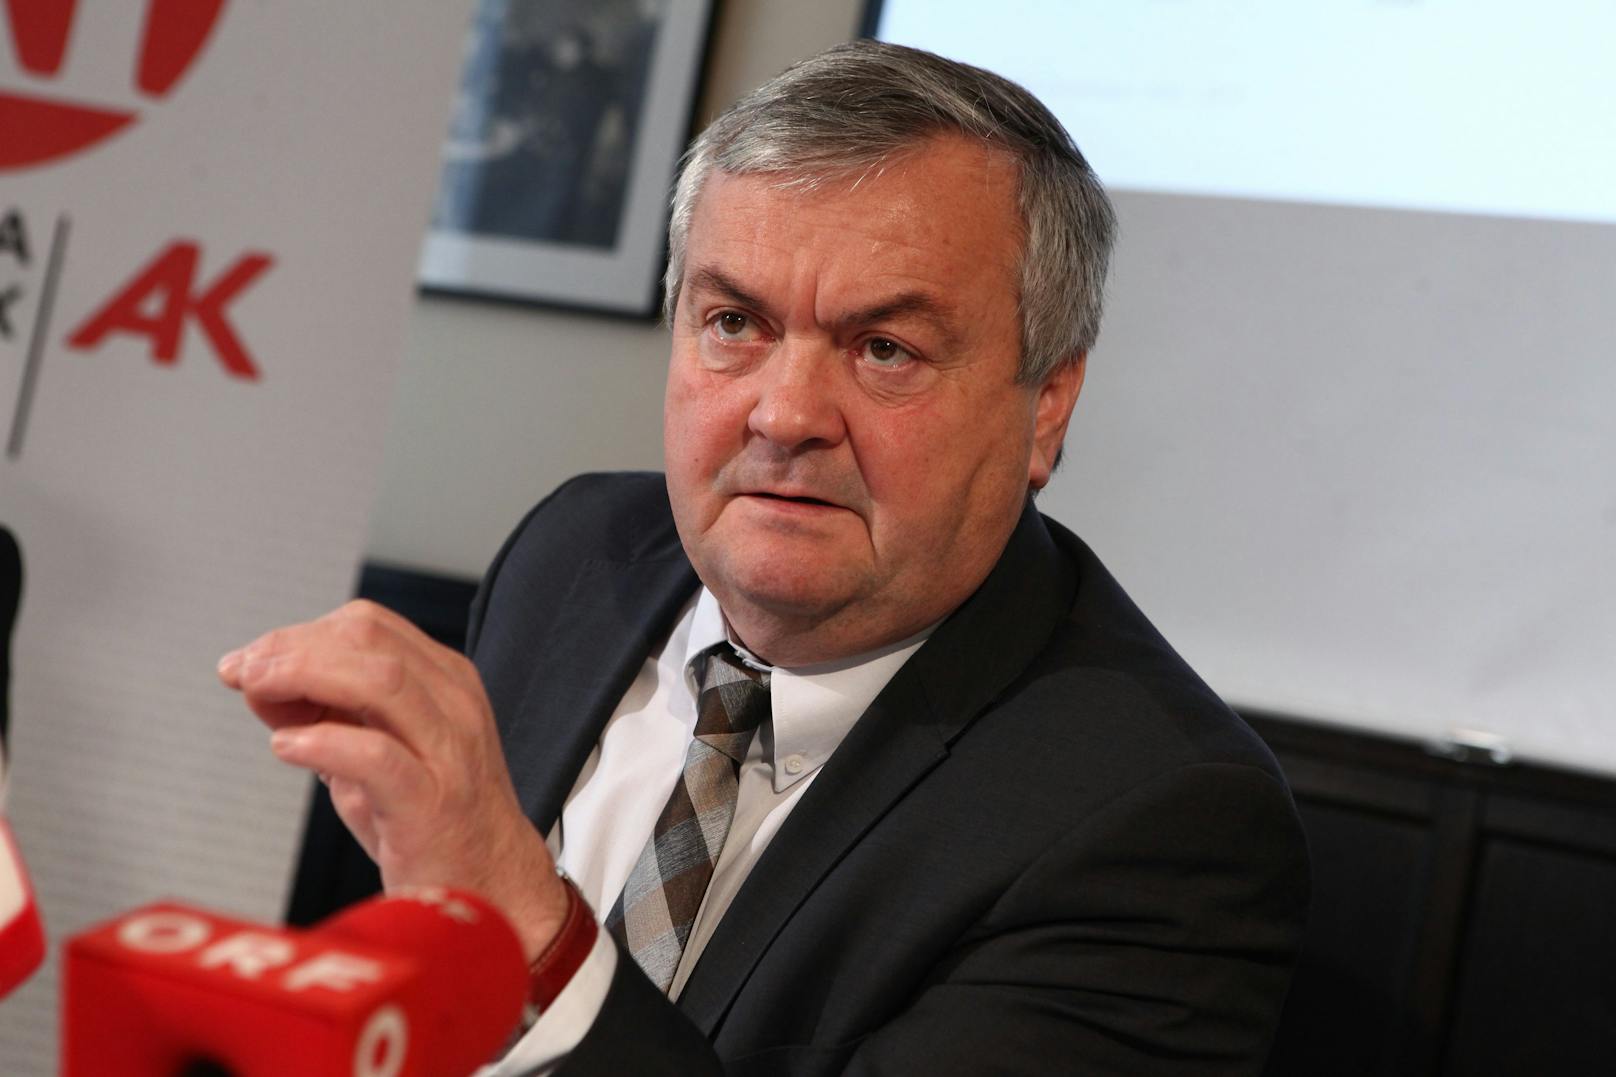 AKOÖ-Präsident Johann Kalliauer gibt Antwort auf arbeitsrechtliche Fragen zur Corona-Impfung.